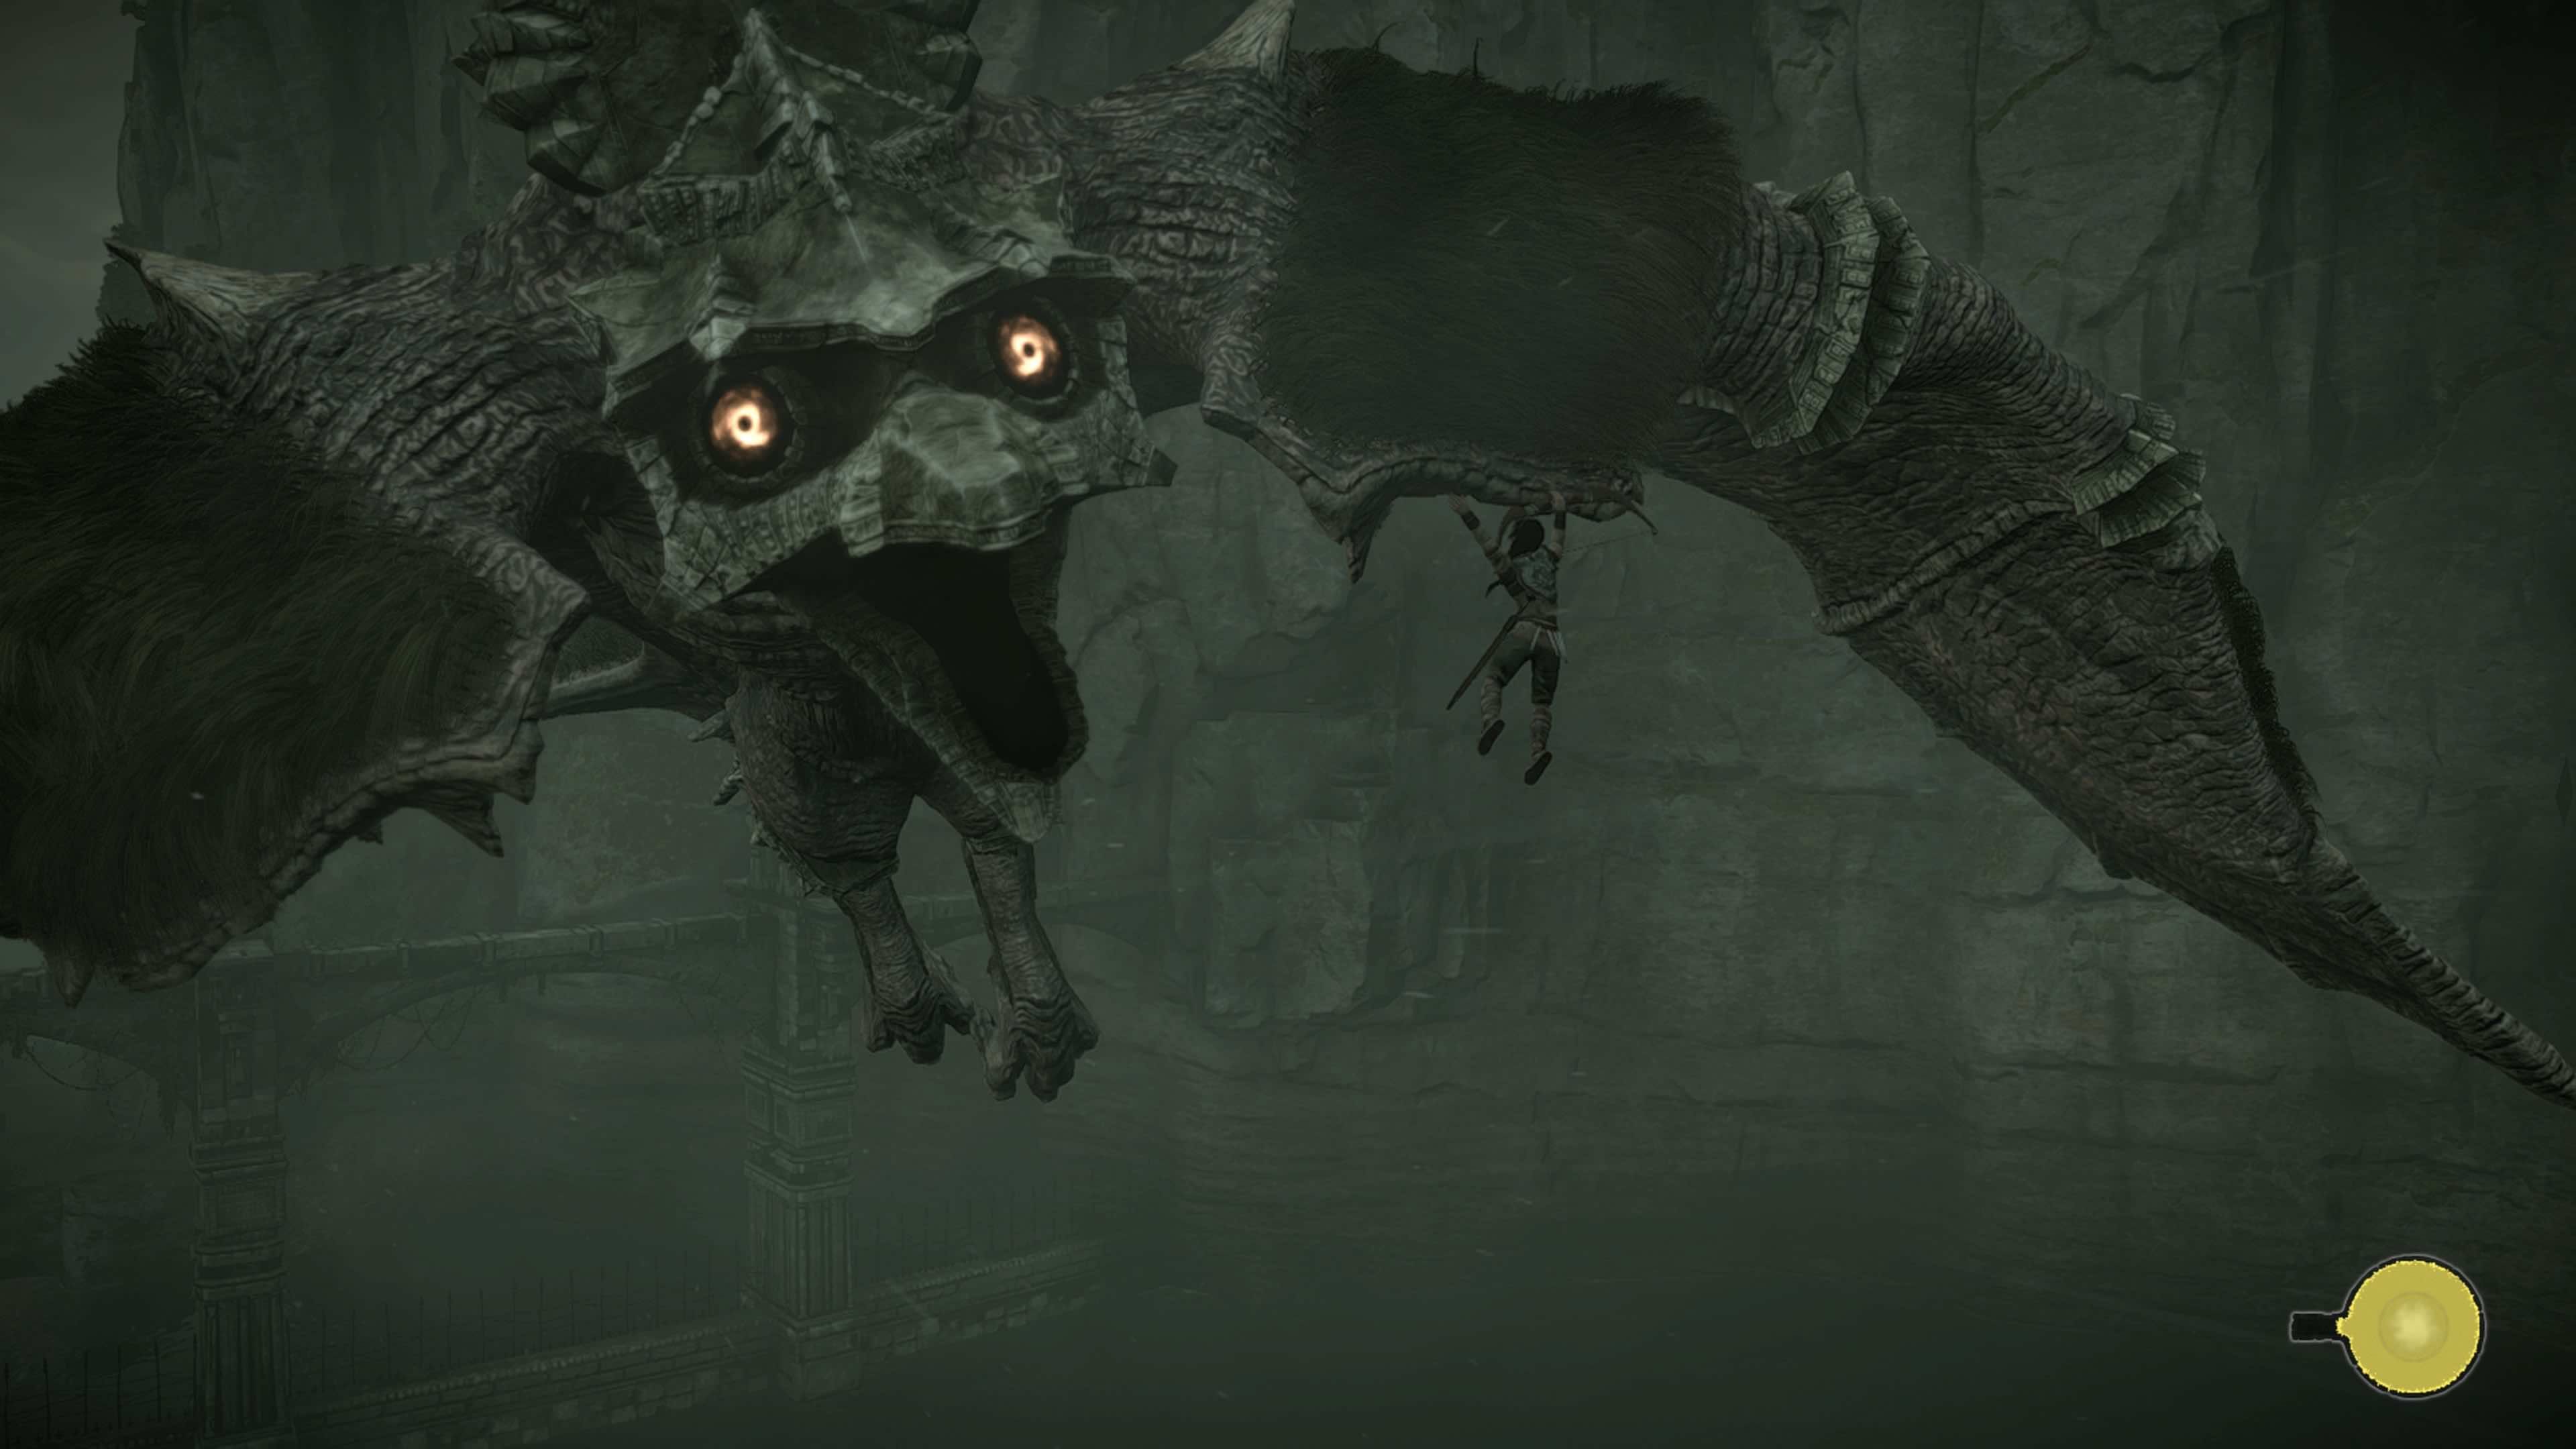 Shadow of the Colossus en PS4 sigue reteniendo su capacidad para dejar con la boca abierta. Subirnos al vuelo en este Coloso sigue siendo uno de los momentos que no se olvidan fácilmente...